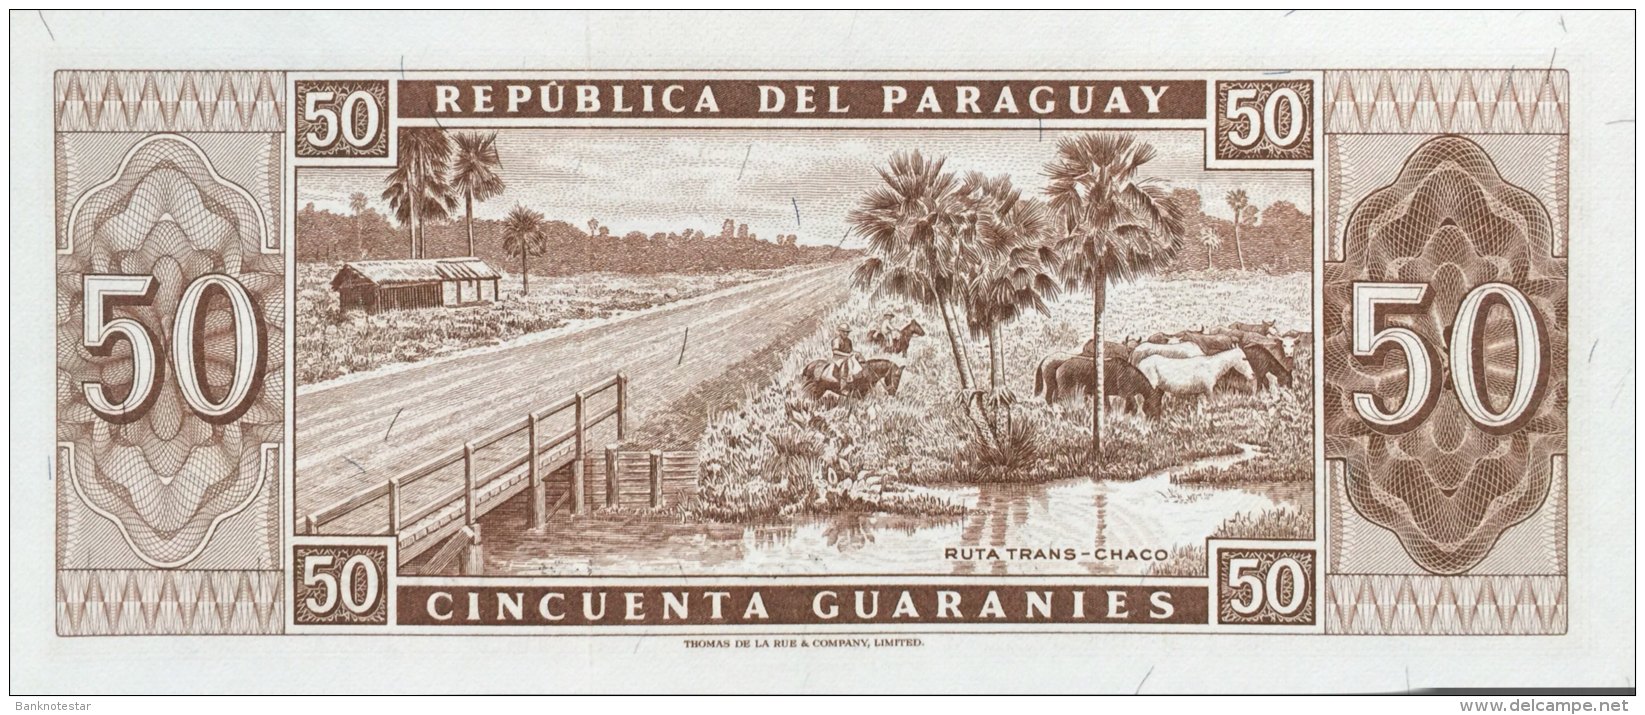 Paraguay 50 Guaranies, P-197b (L.1952) - UNC - Paraguay